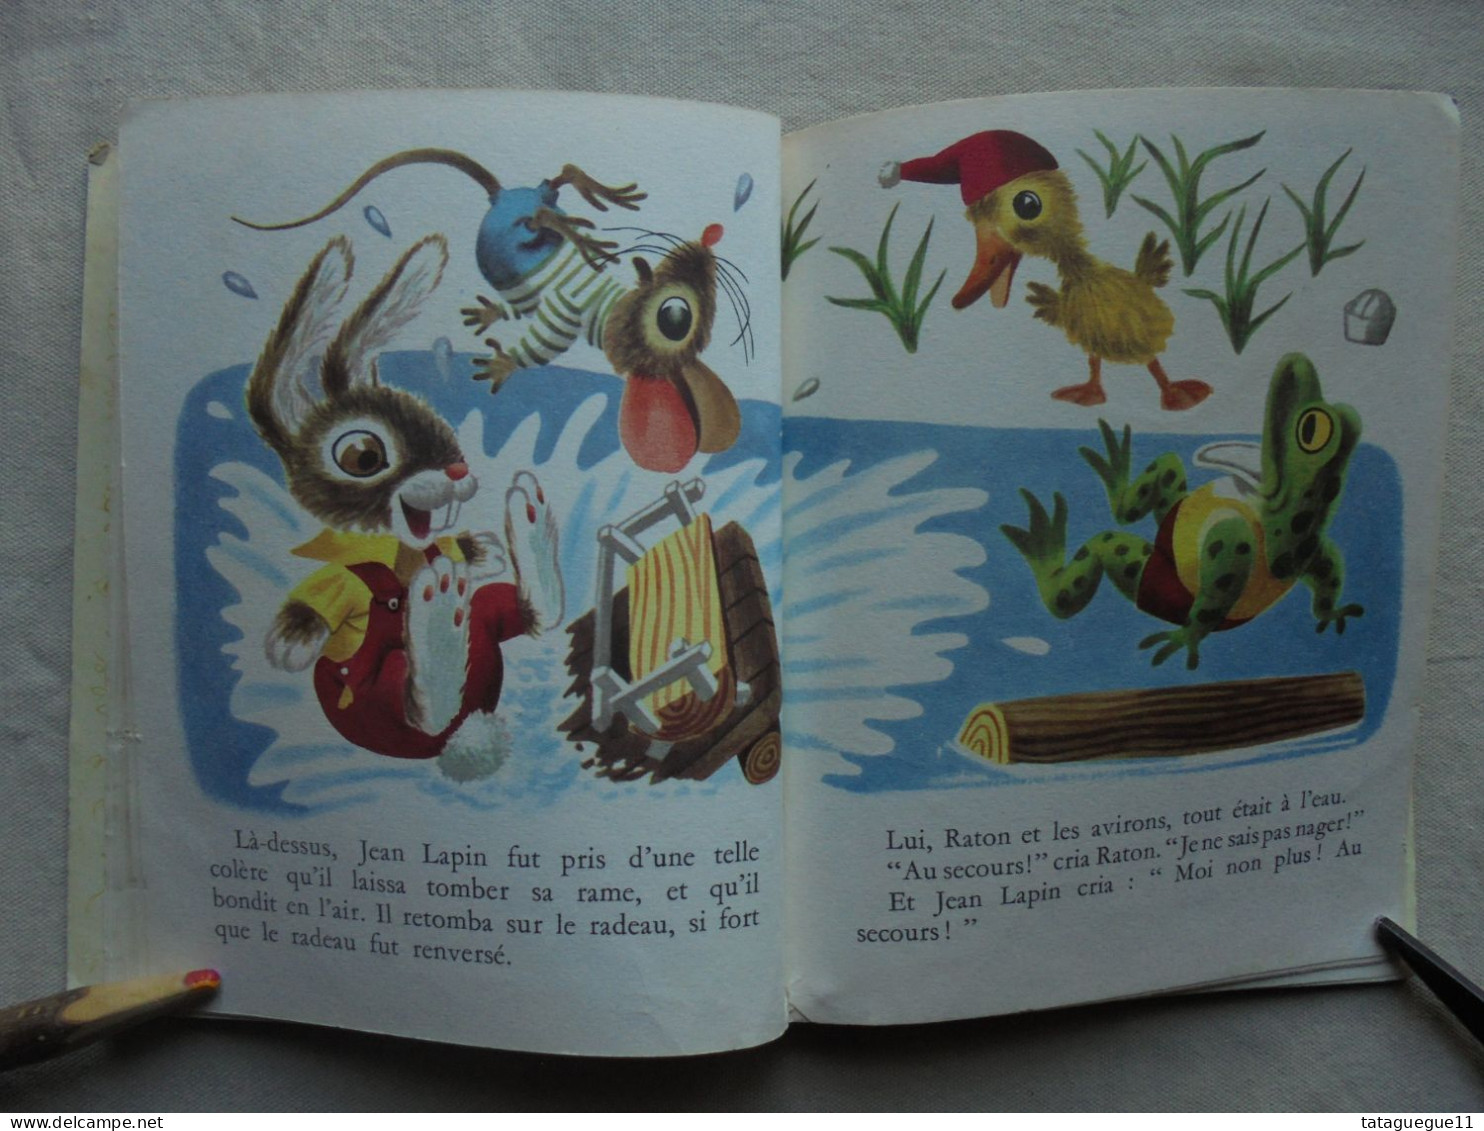 Ancien - Un Petit Livre d'Or Couac Le canard et ses amis Ed. Cocorico 1950